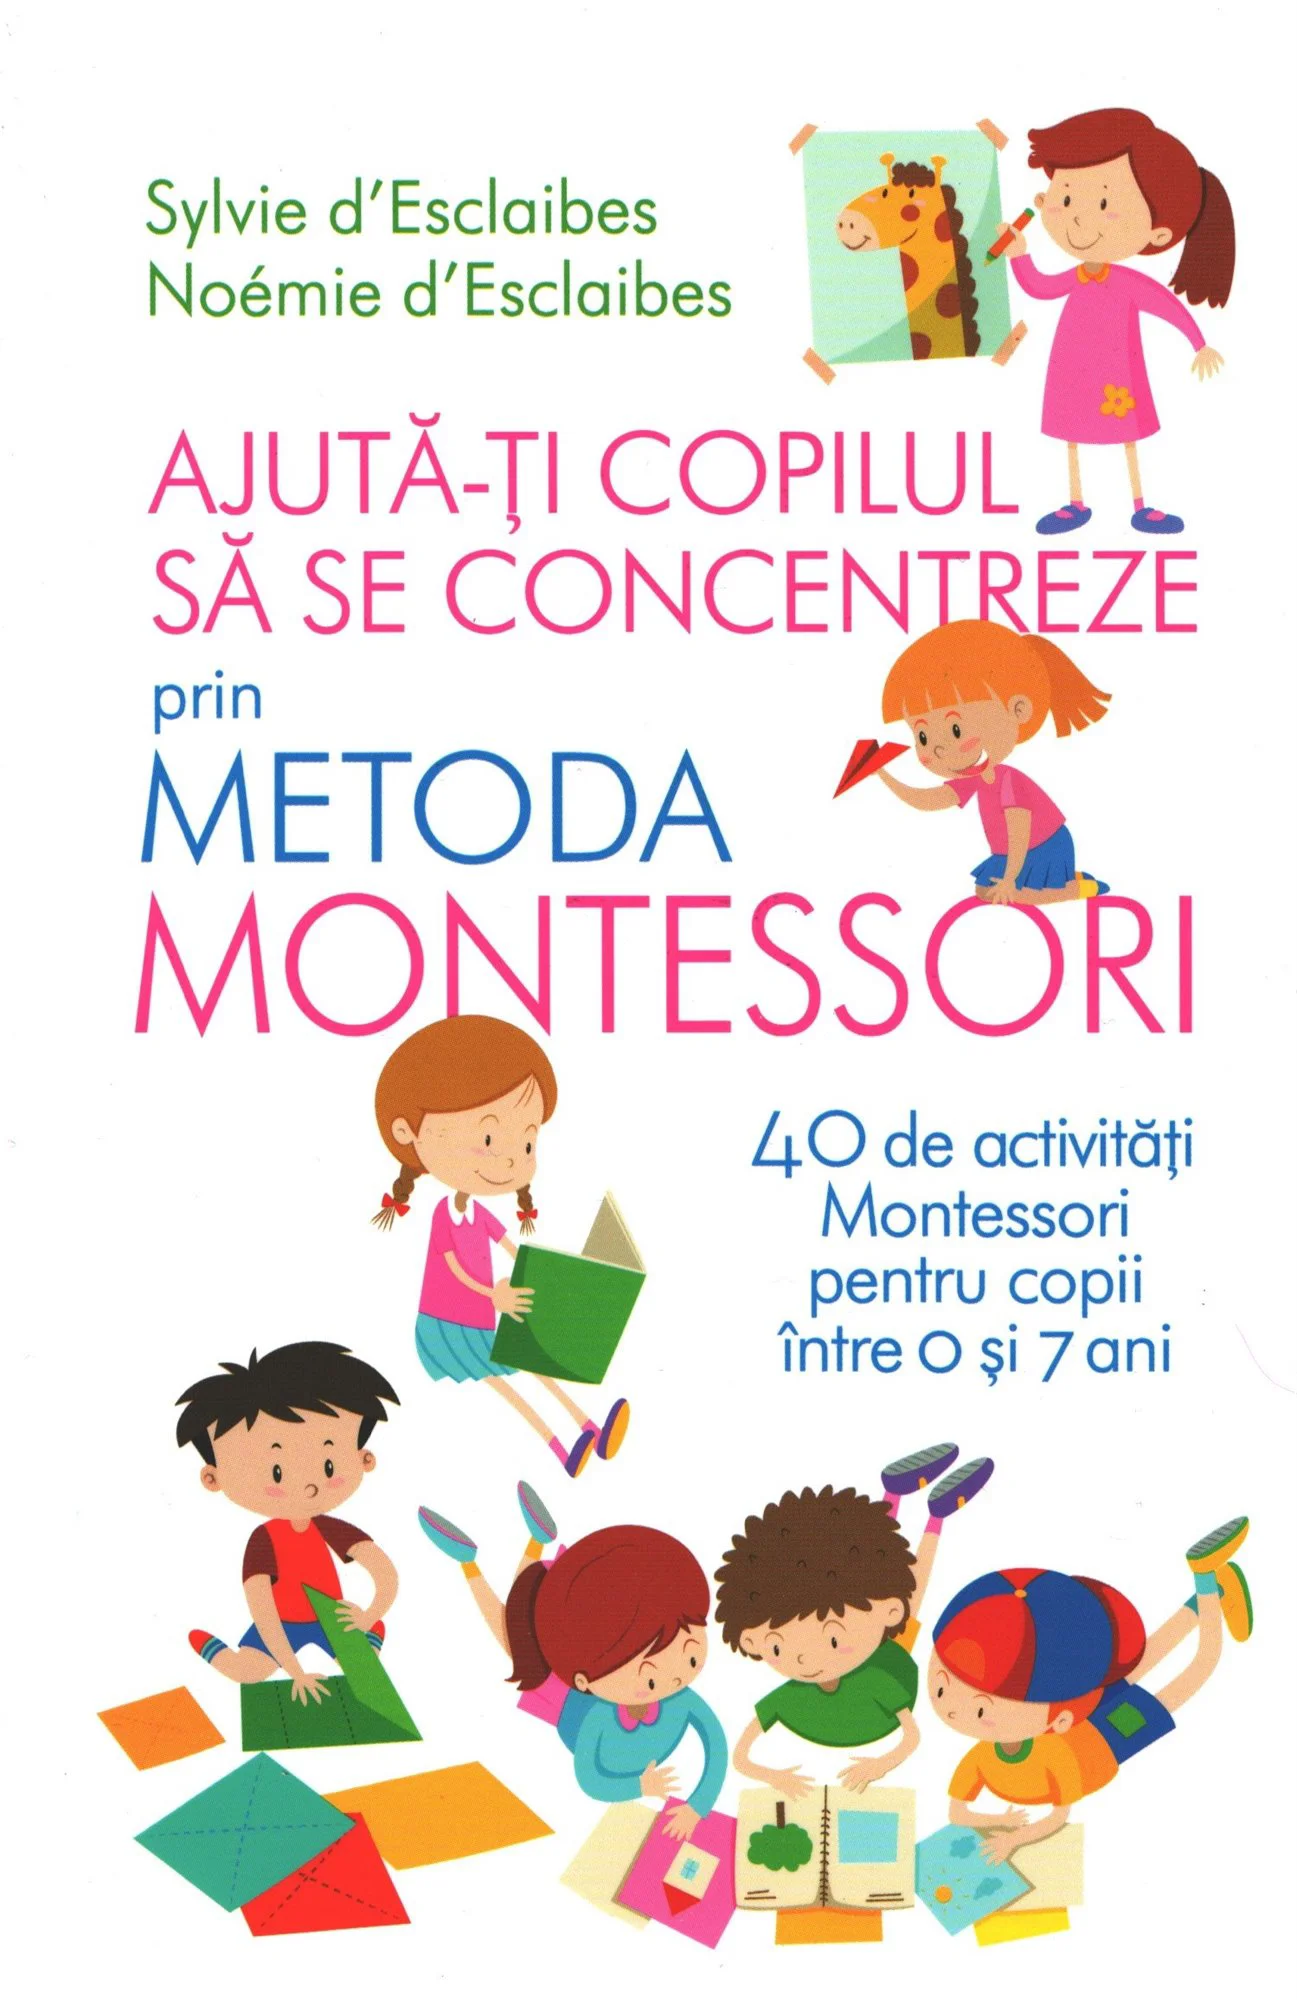 Ajuta-ti copilul sa se concentreze prin metoda Montessori